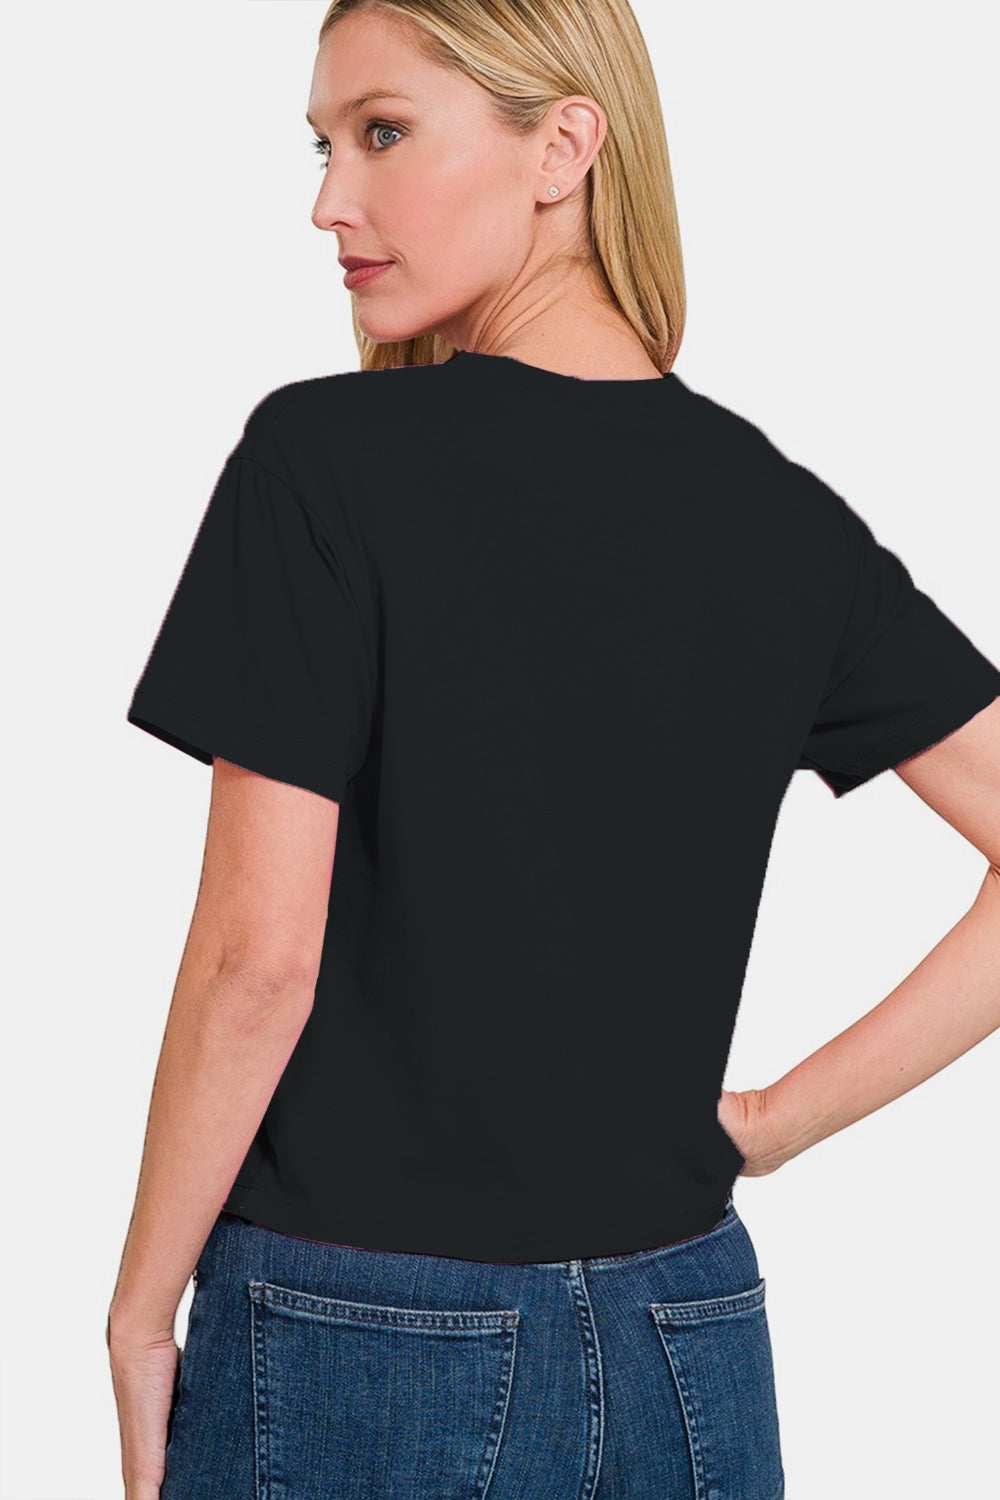 Zenana Round Neck Short Sleeve Cropped T-Shirt - Black